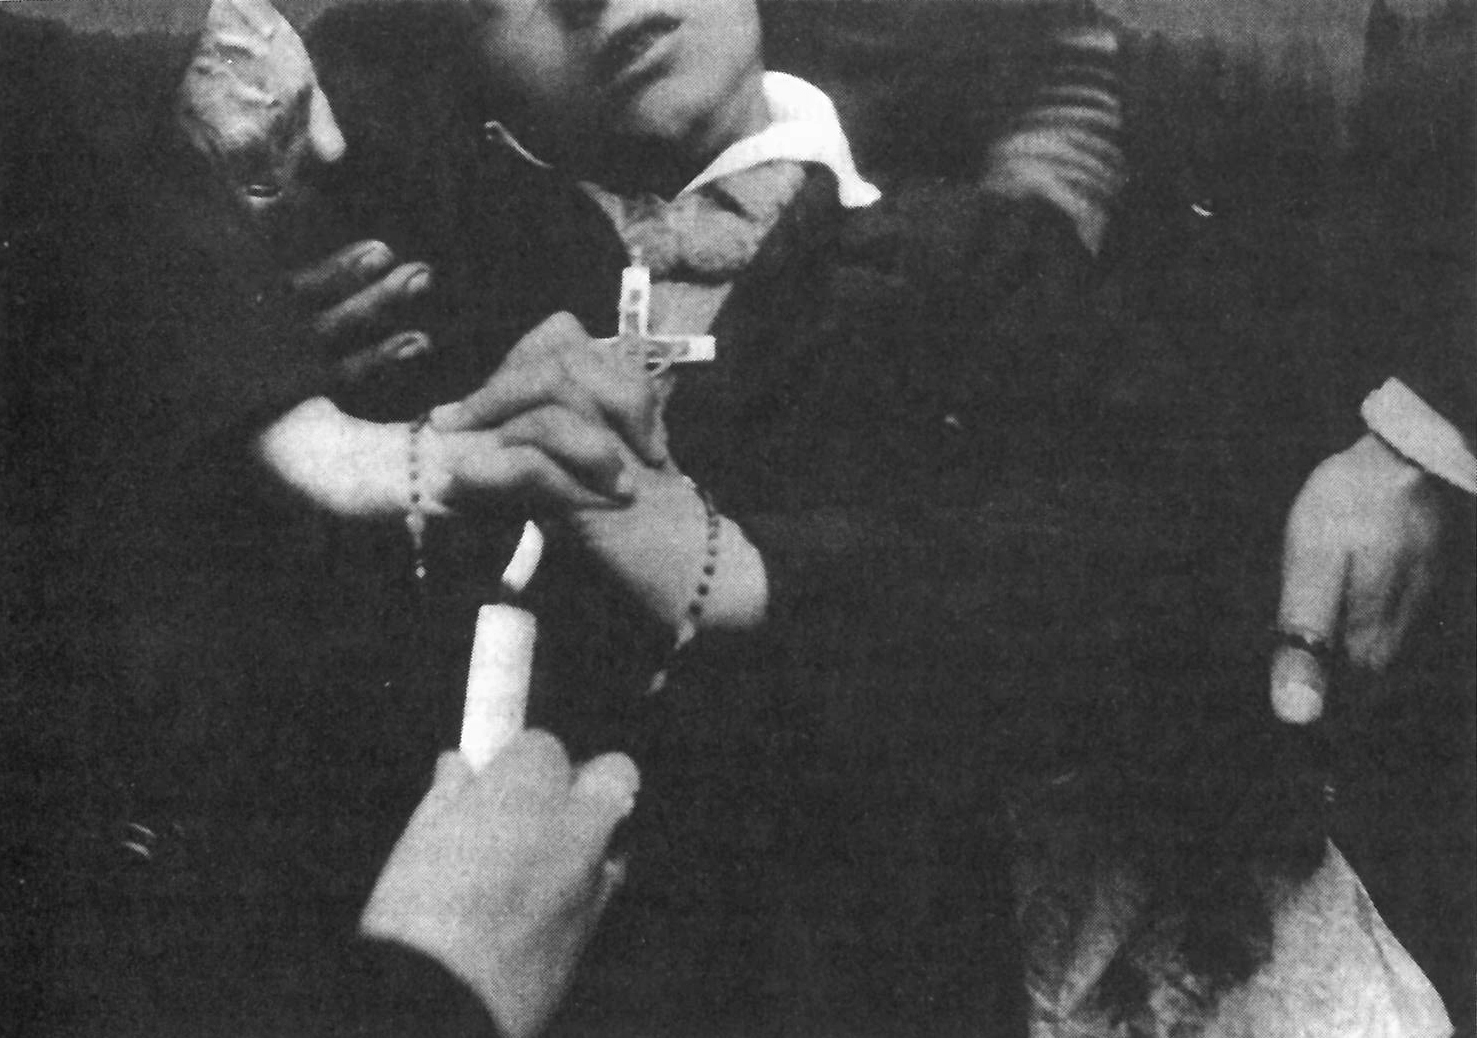 El padre Burguera, probablemente, comprueba con una vela a un niño en visión; mediados de 1933. Fotografía de Raymond de Rigné.